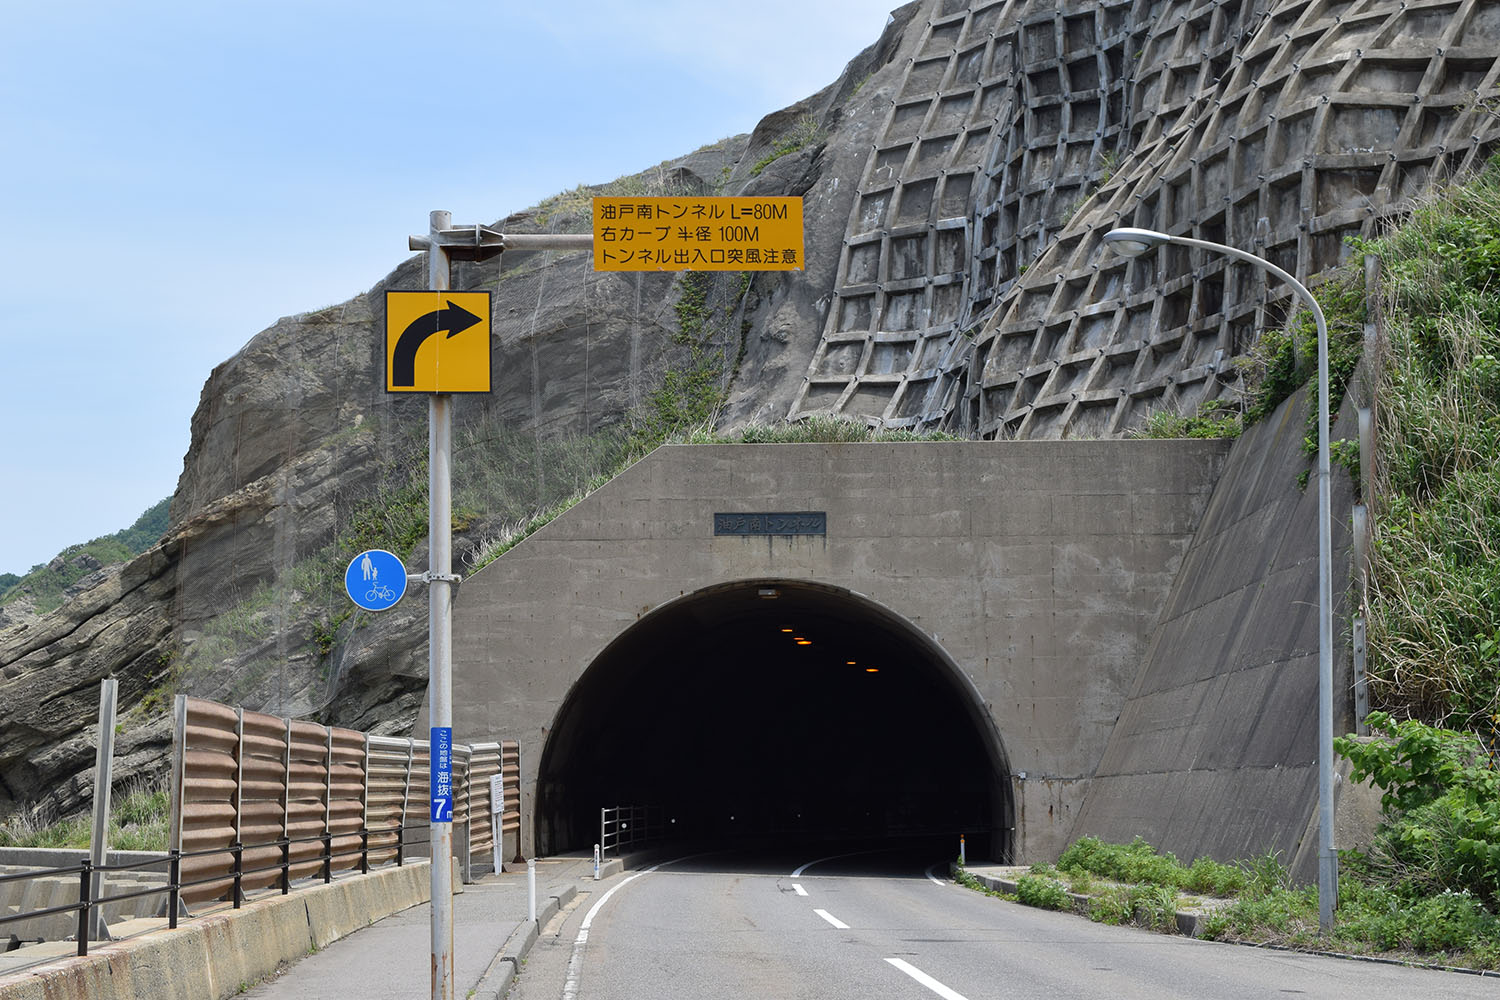 トンネル内の追い越しが可能な場所と禁止な場所の違いとは 〜 画像7